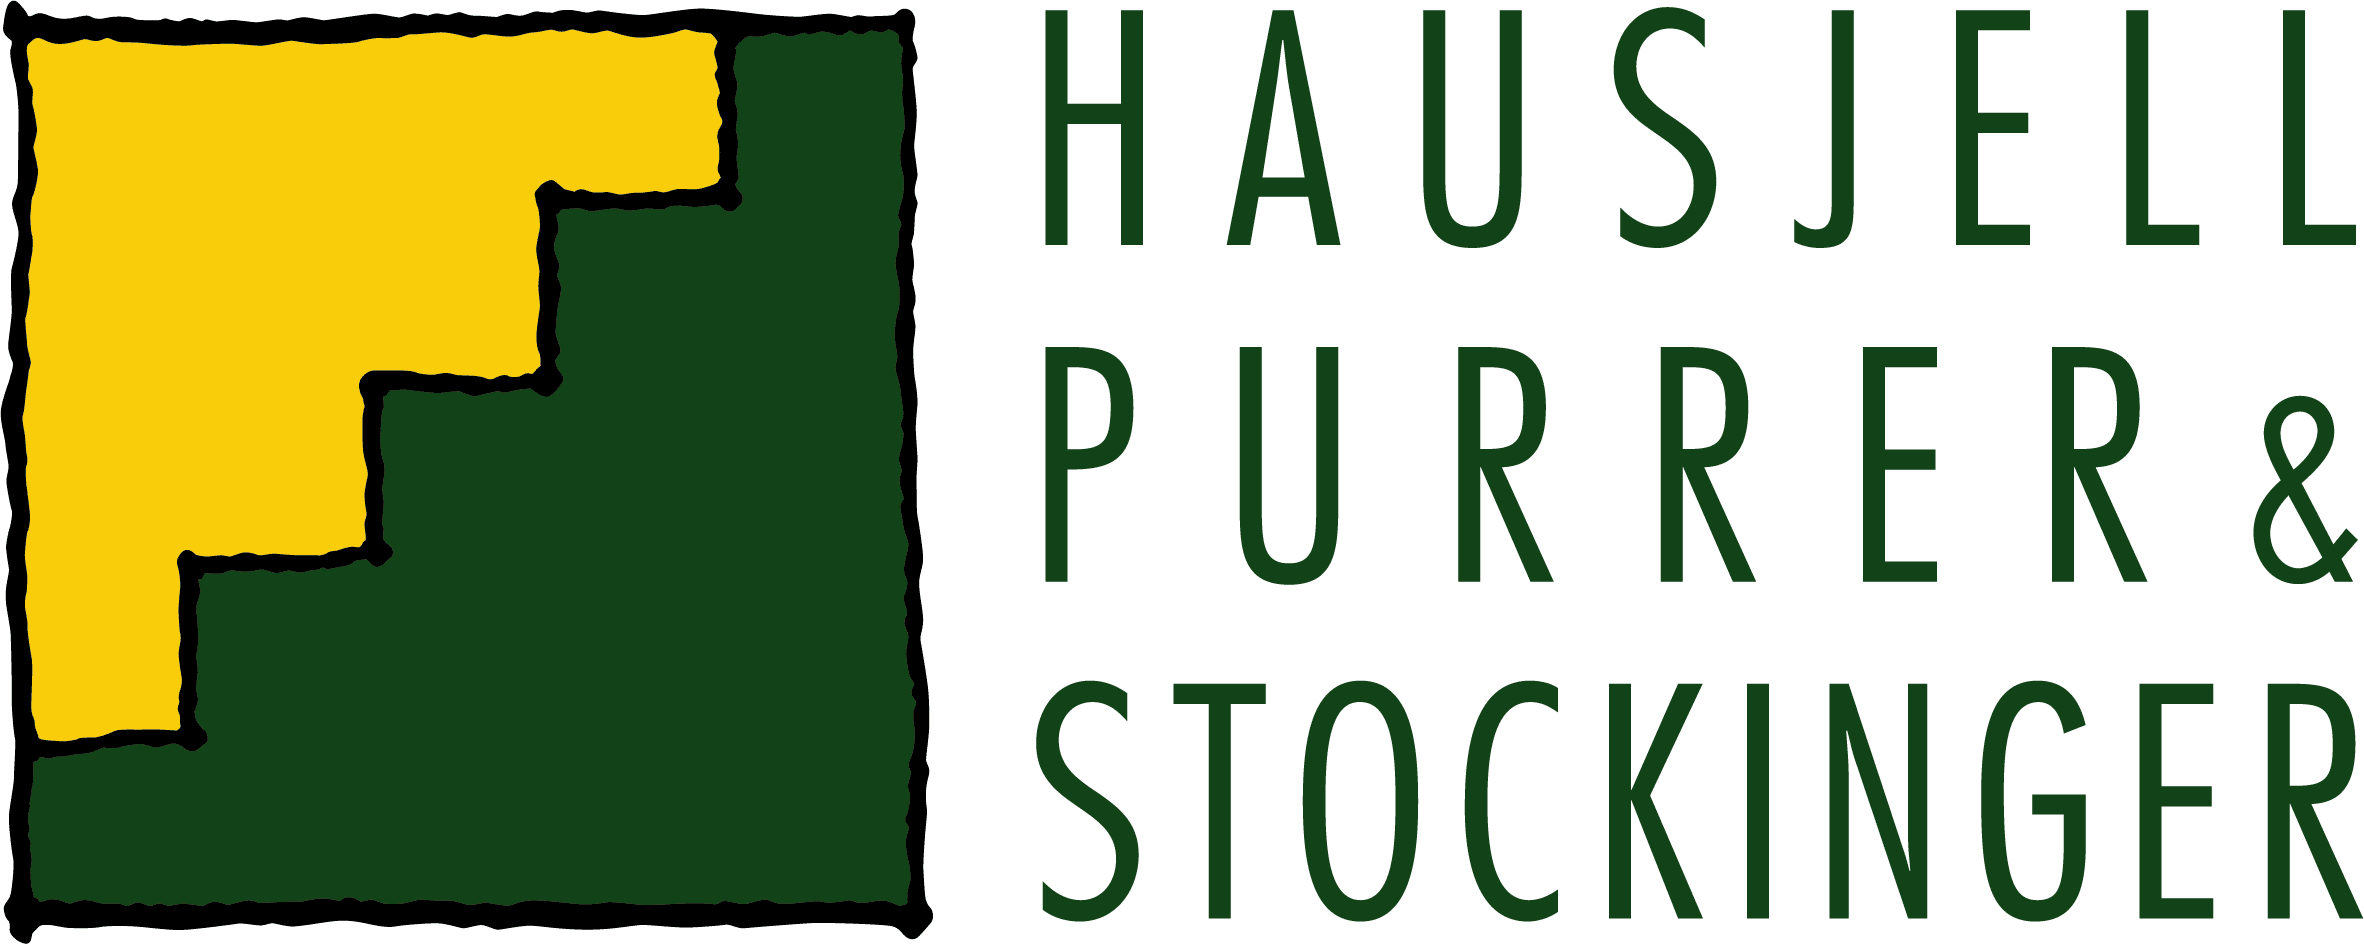 Logo Hausjell Purrer & Stockinger